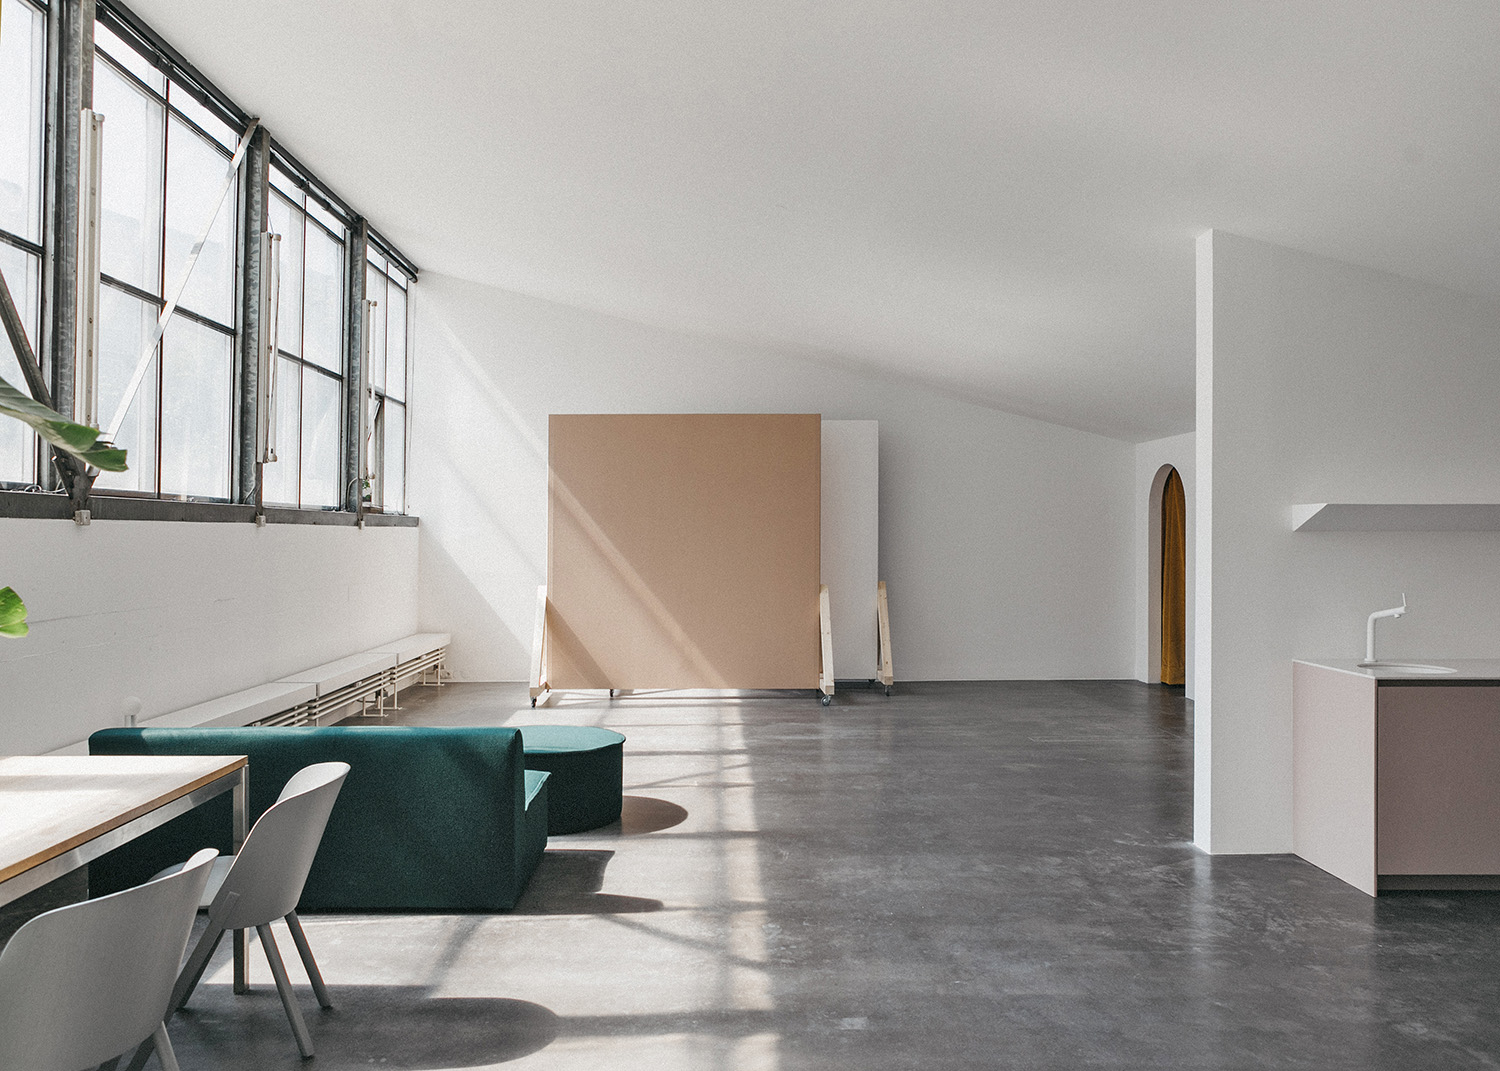 Gerdesmeyer Krohn
Office for Design Studio Schanz